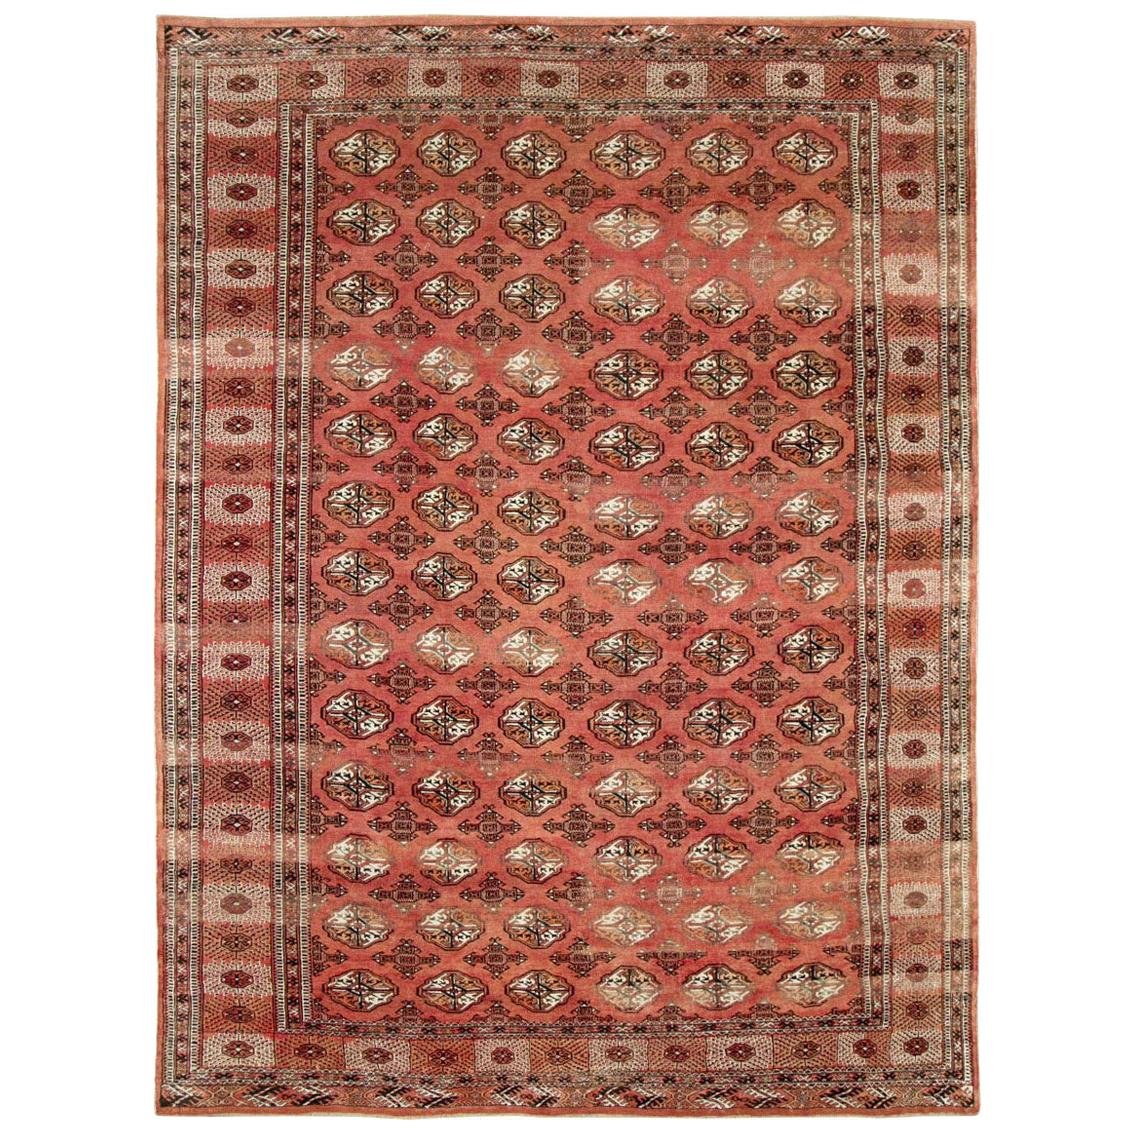 Stammeskunst Mitte des 20. Jahrhunderts Handgefertigter zentraler asiatischer Turkoman-Teppich, großformatig